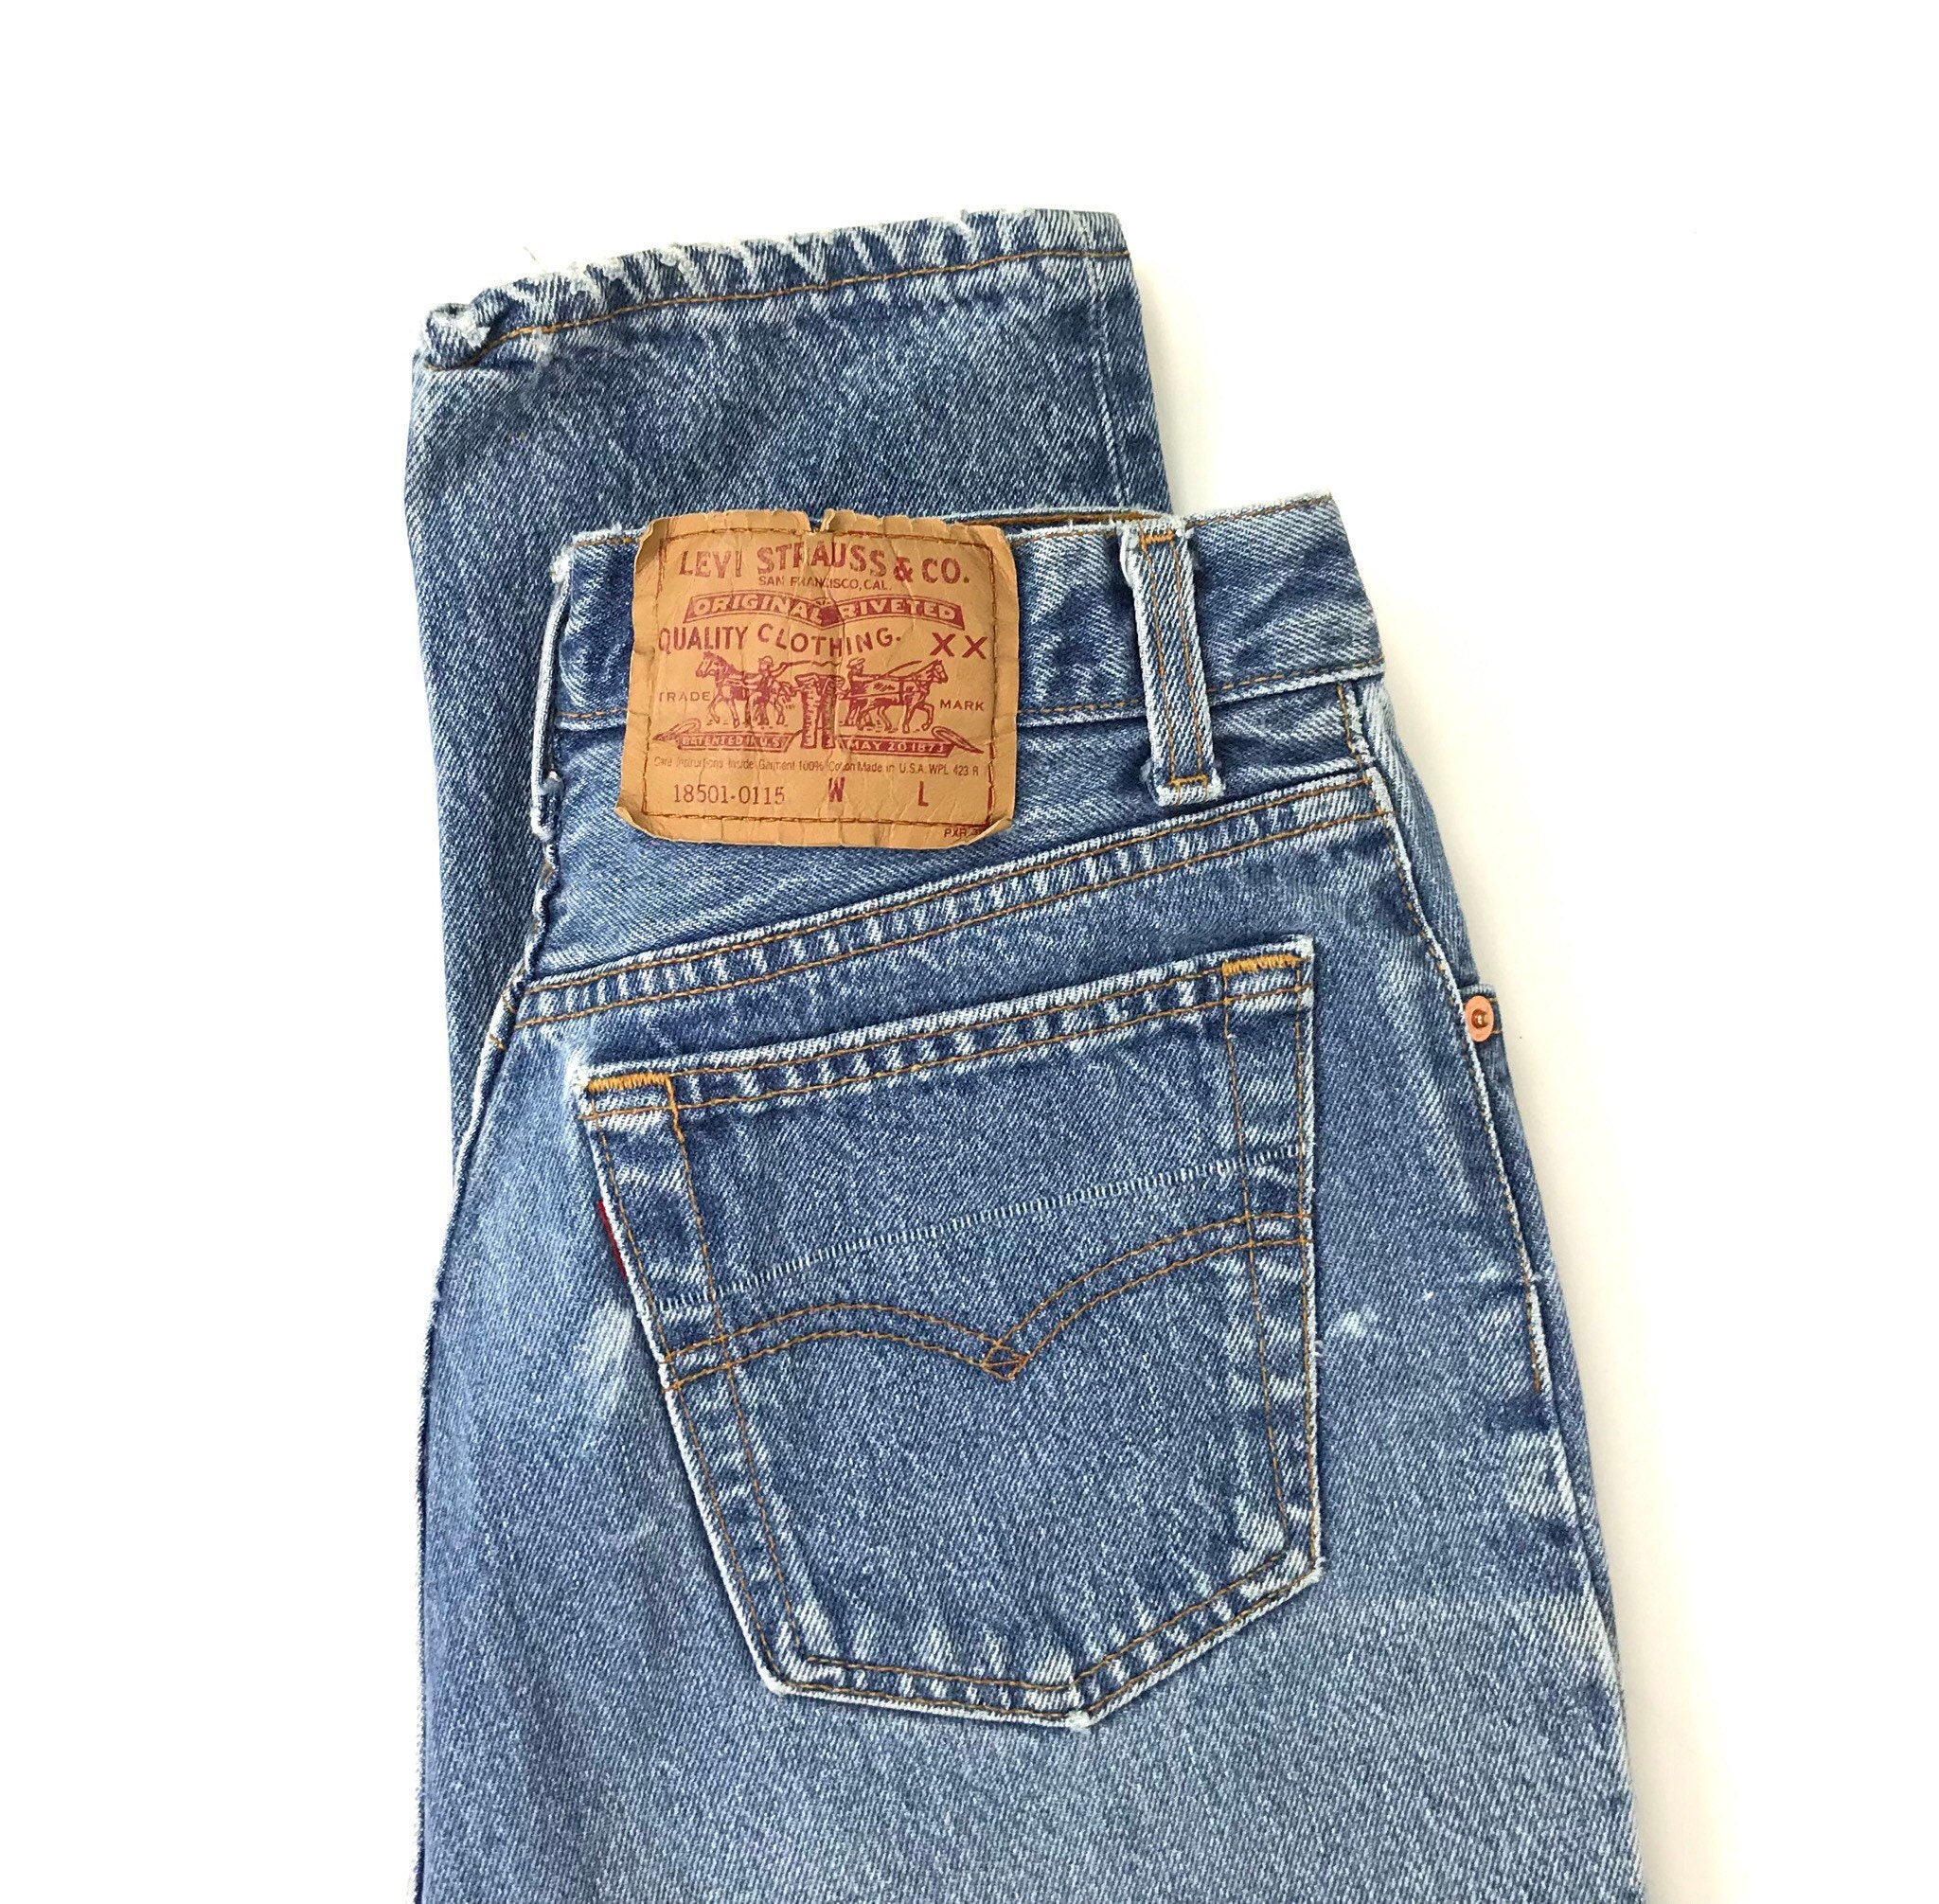 Levi's 501 Vintage Jeans / Size 28 29